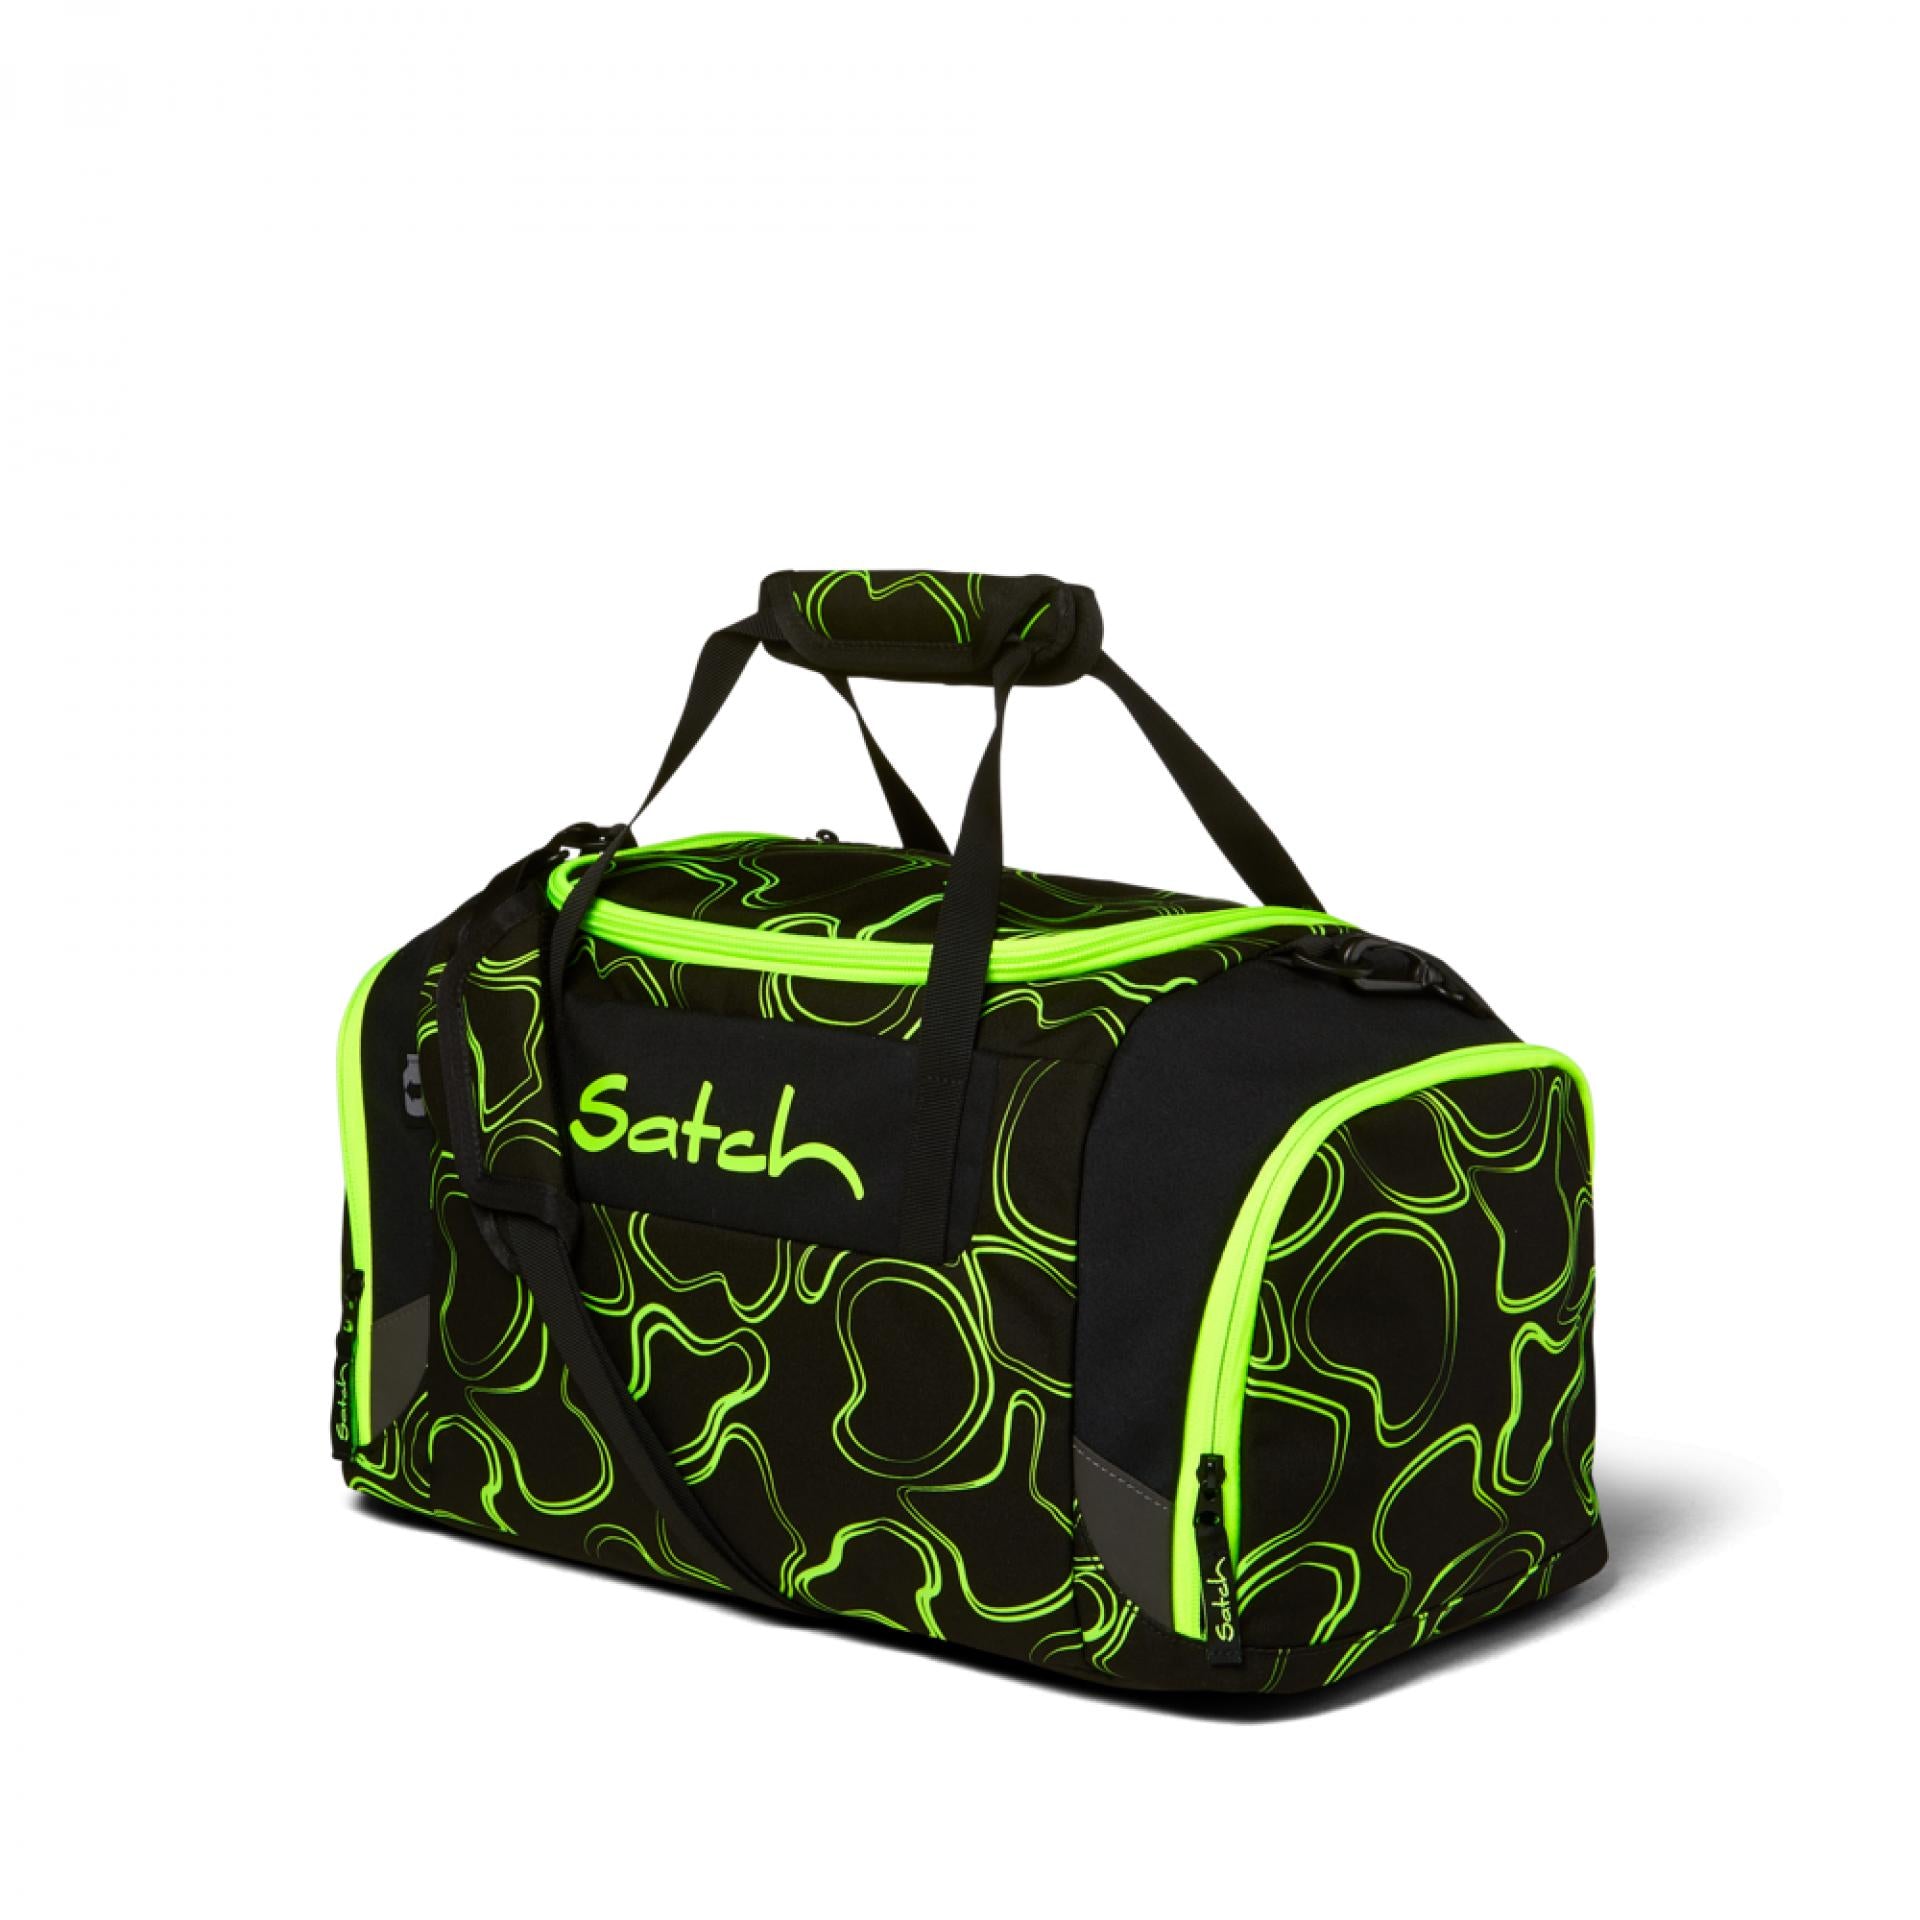 Satch Sporttasche - Farbe: Green Supreme